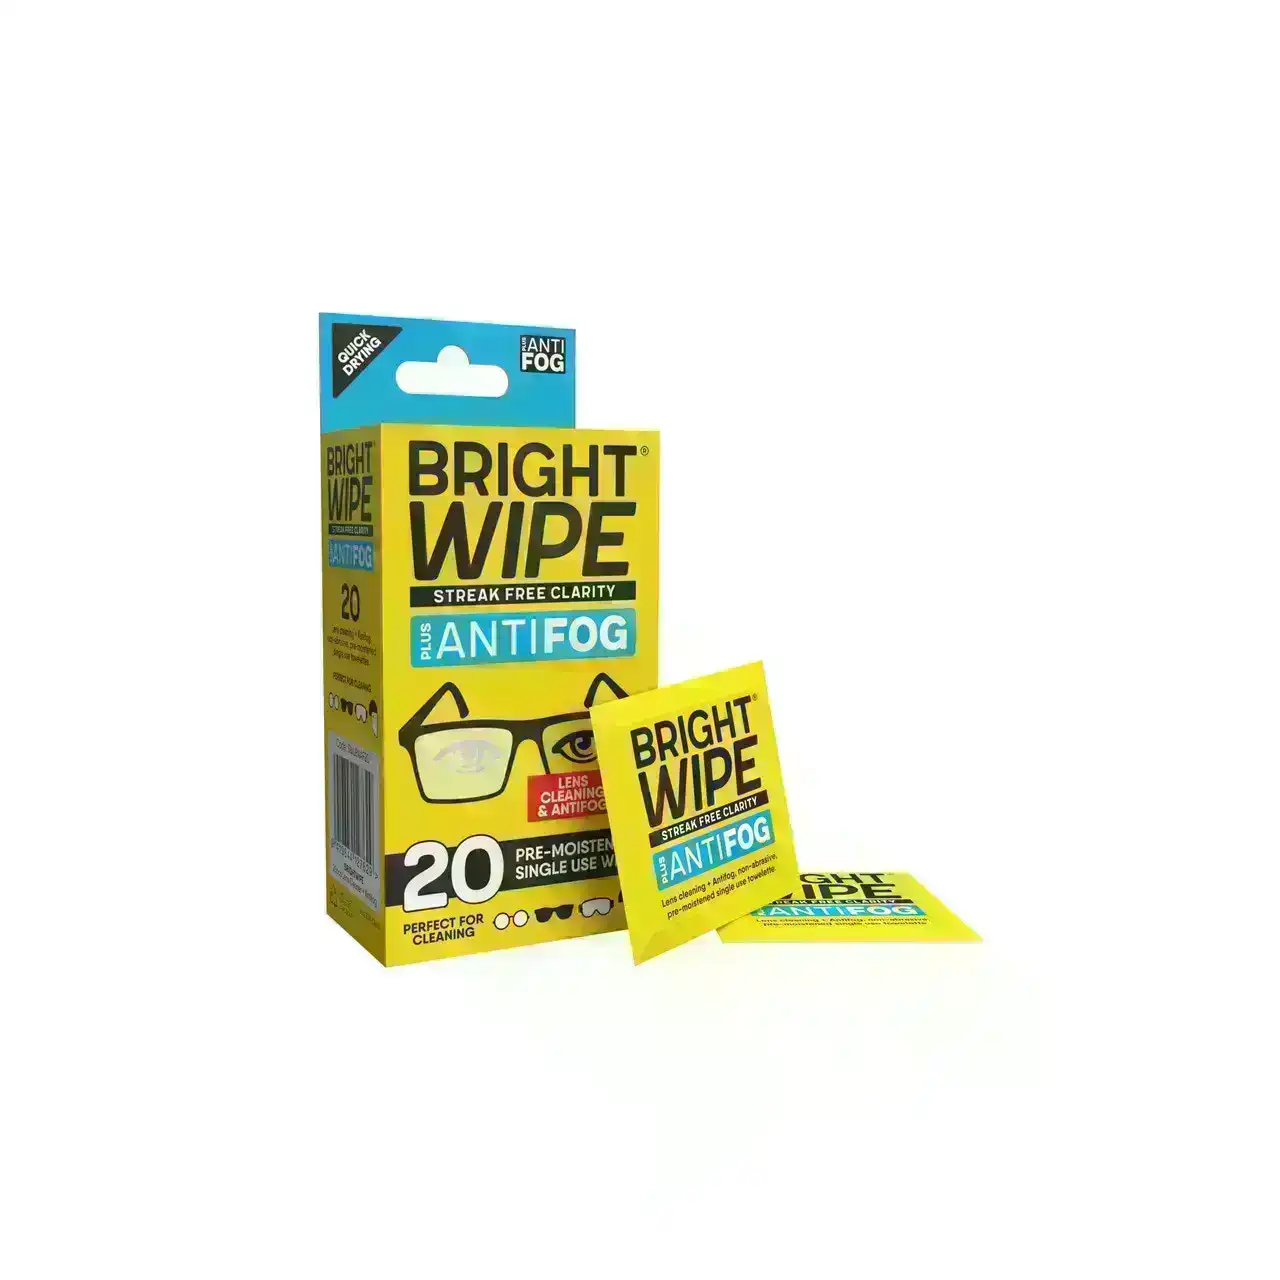 BRIGHTWIPE 20pcs Lens Cleaner Antifog Wipes